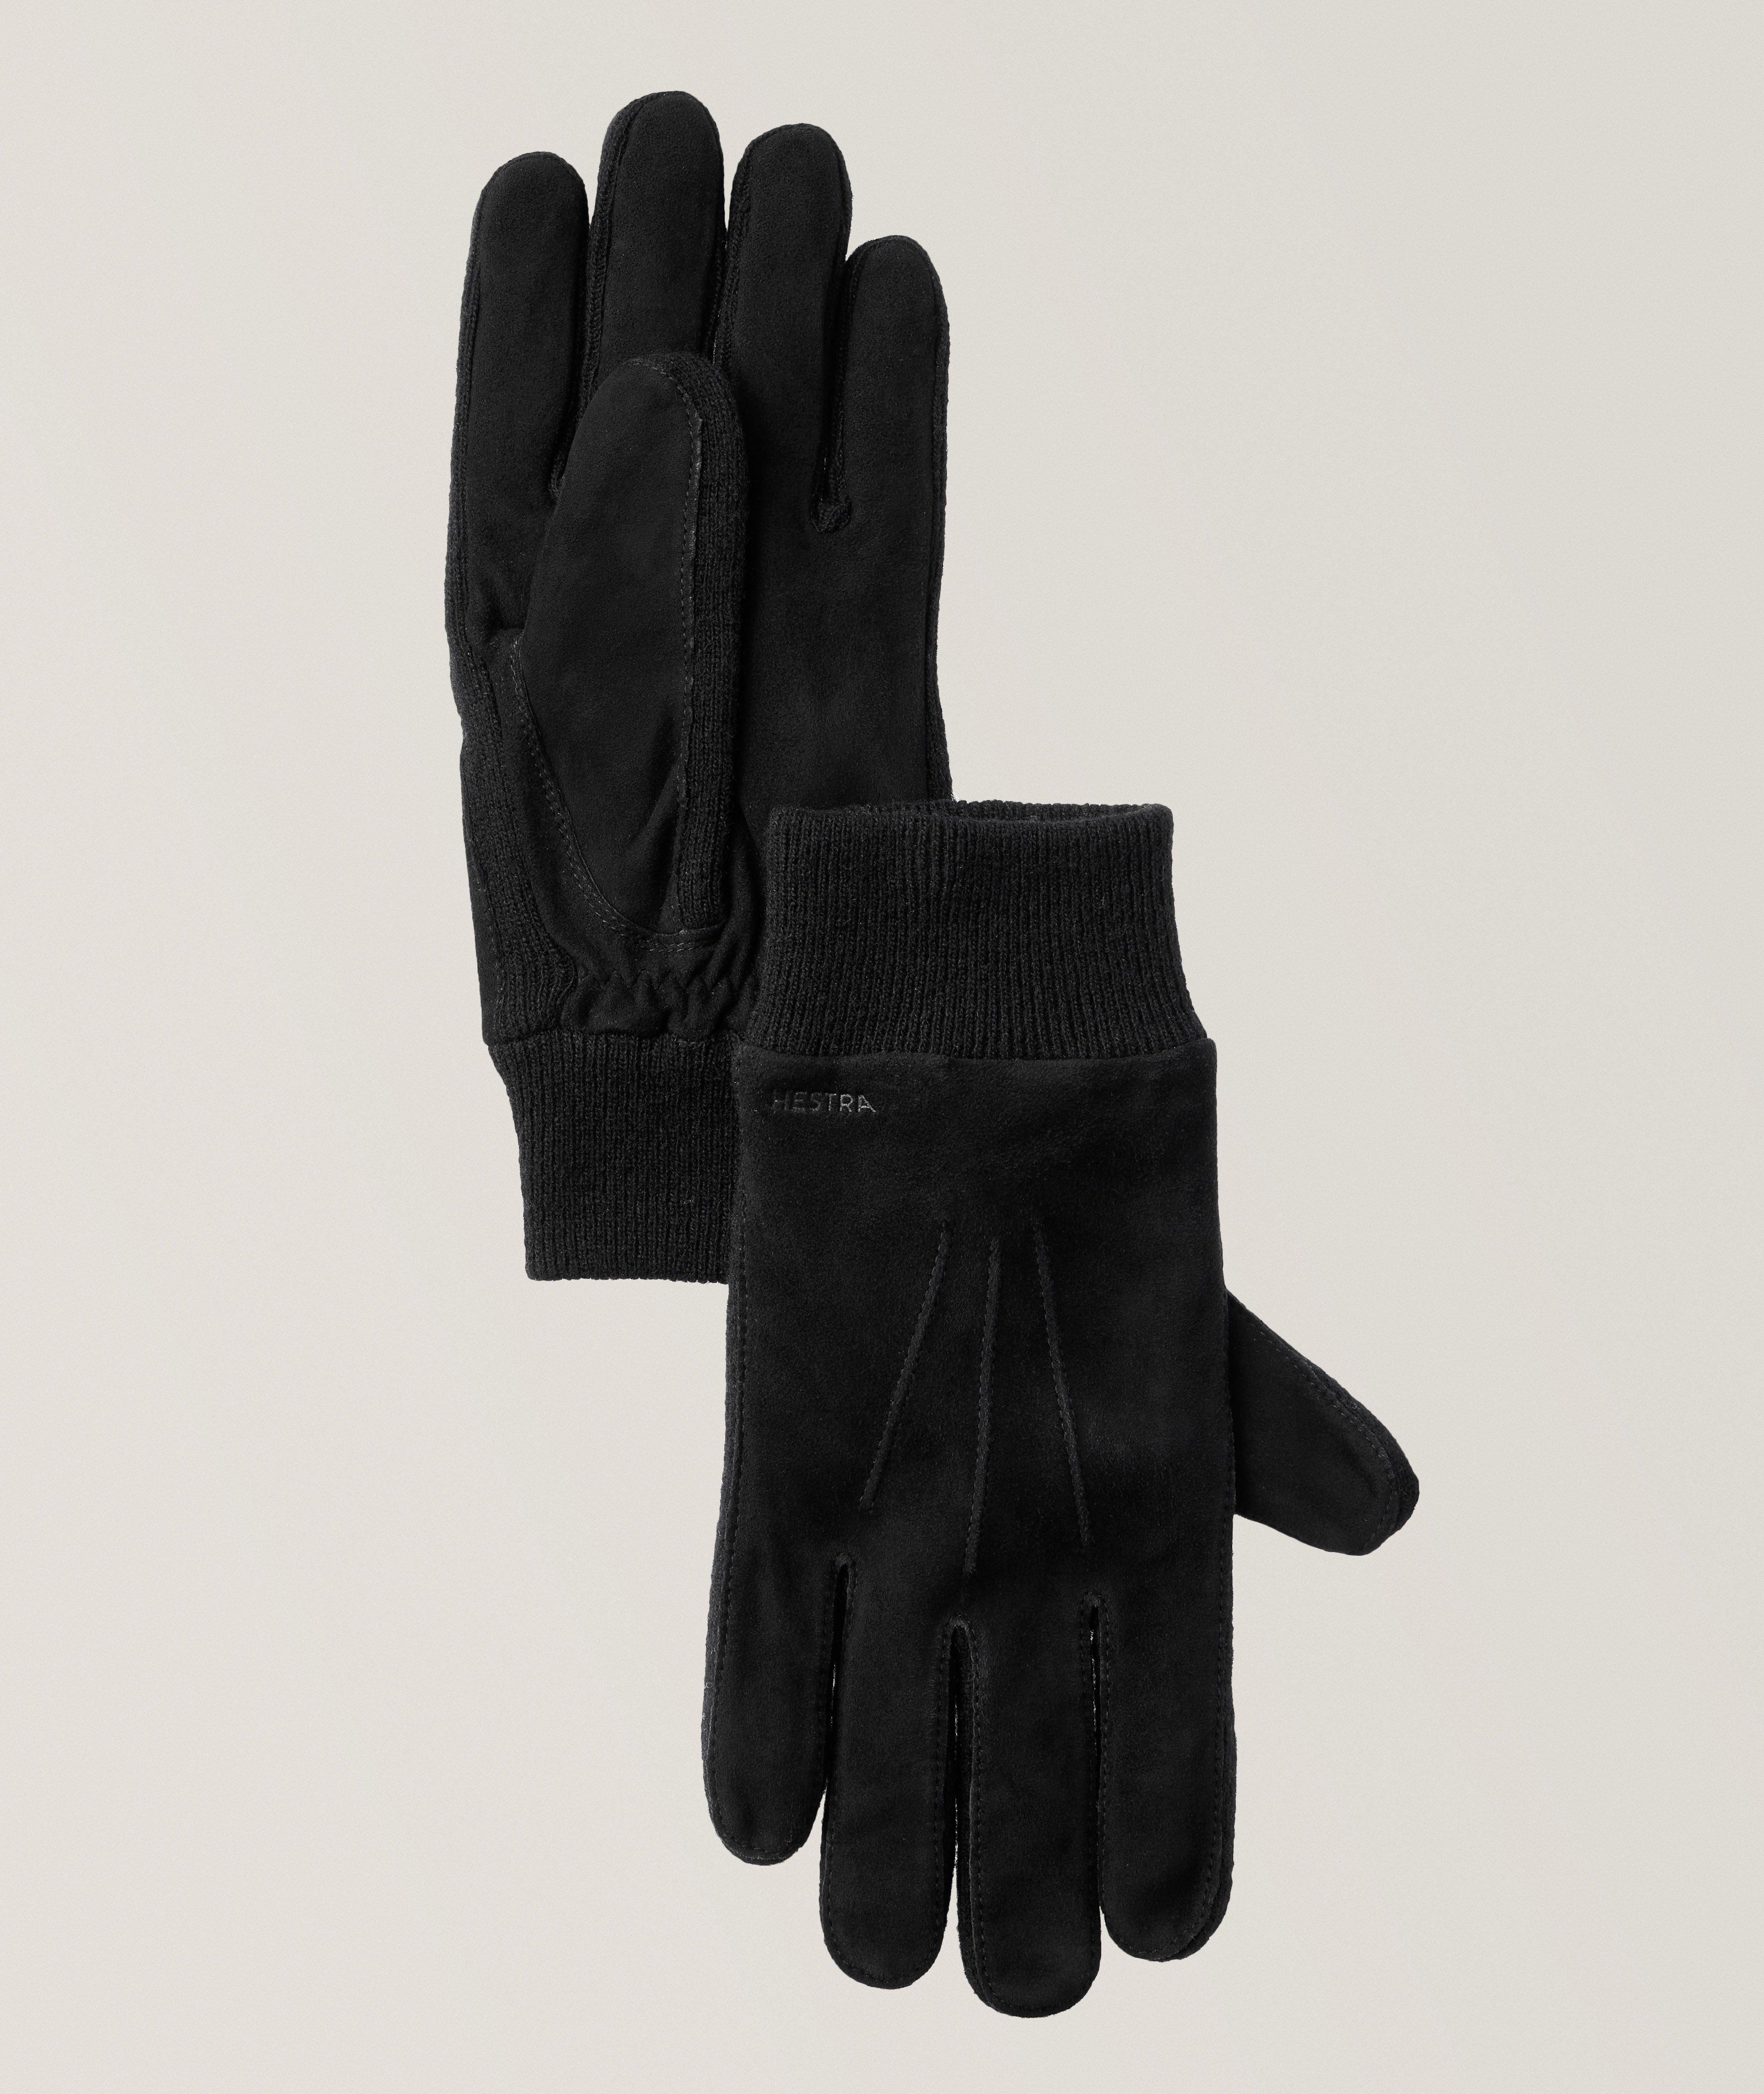 Geoffrey Wool-Blend Gloves image 0